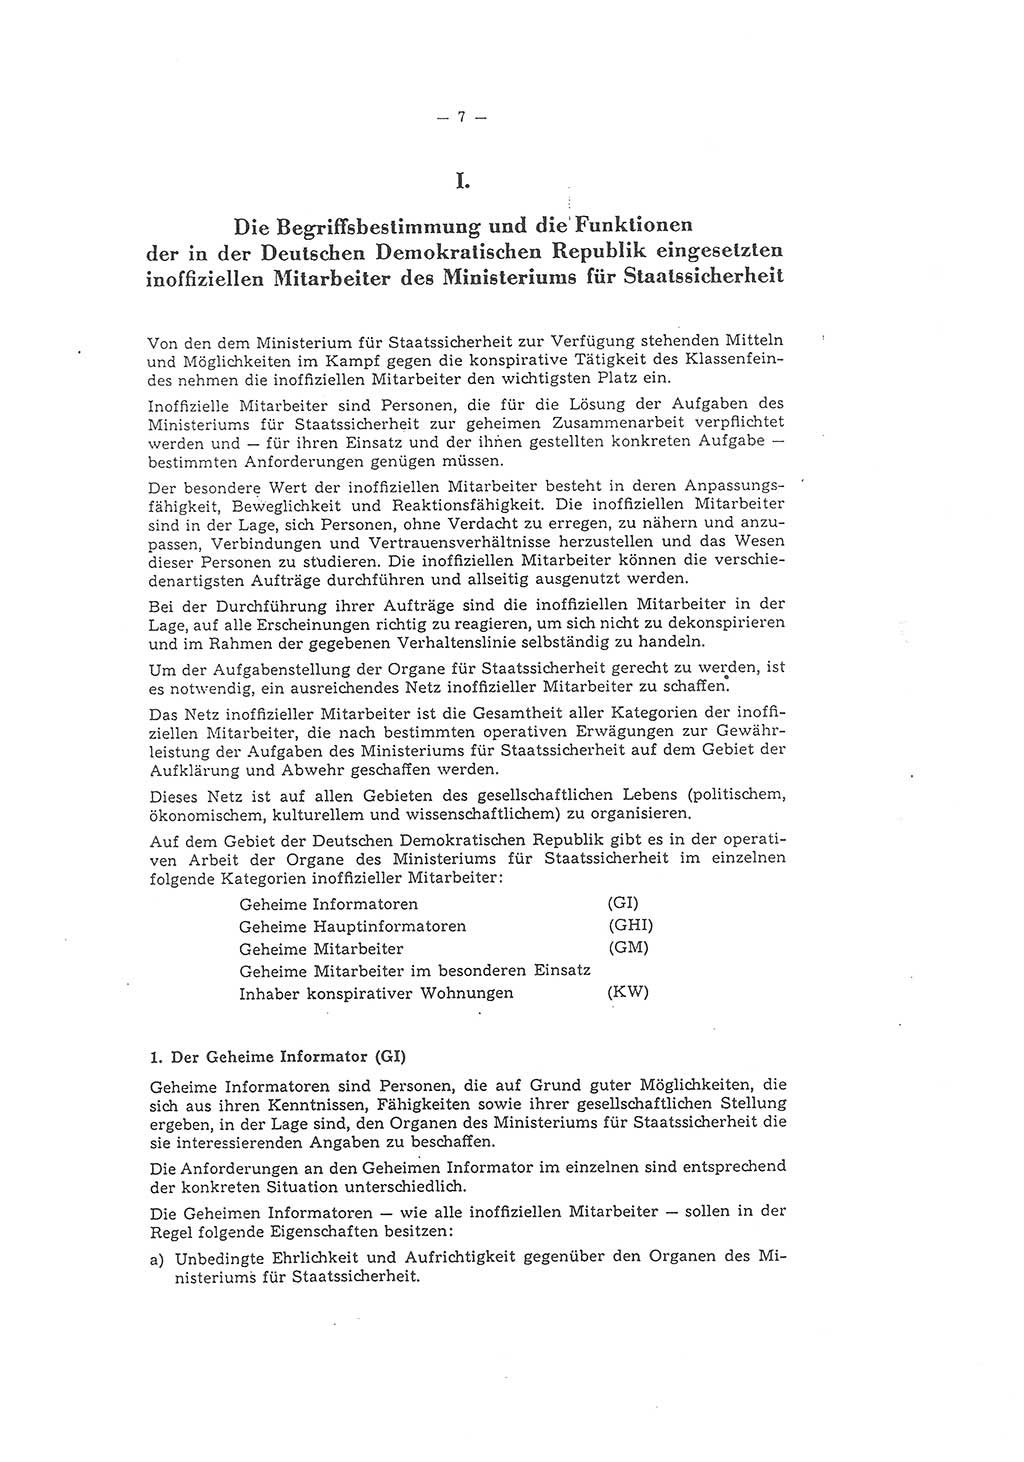 Richtlinie 1/58 für die Arbeit mit inoffiziellen Mitarbeitern im Gebiet der Deutschen Demokratischen Republik (DDR), Ministerium für Staatssicherheit (MfS), Der Minister (Mielke), Geheime Verschlußsache (GVS) 1336/58, Berlin 1958, Seite 7 (RL 1/58 DDR MfS Min. GVS 1336/58 1958, S. 7)